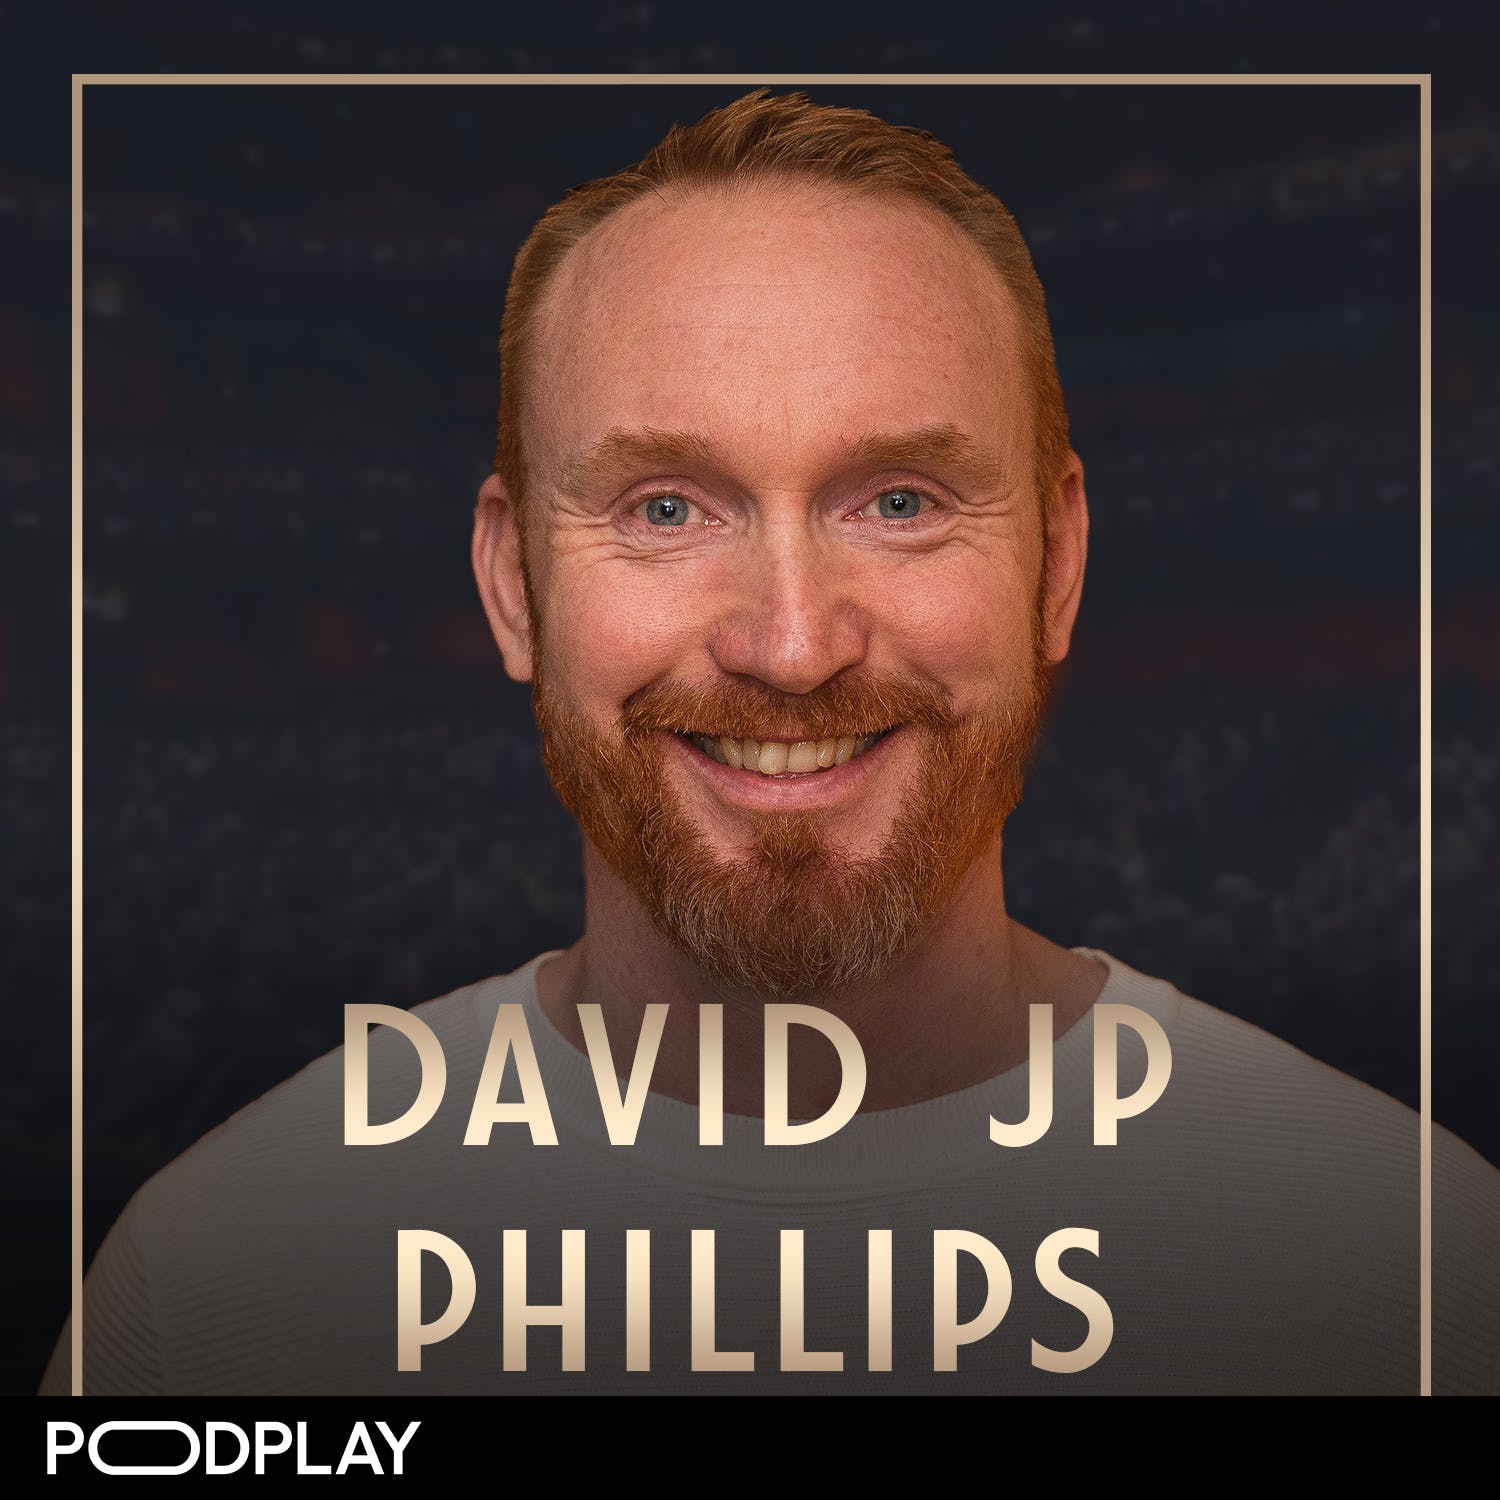 454. David JP Philips - Skapa mer "wow" i livet: priming, kommunikation & hur du älskar dig själv, Short